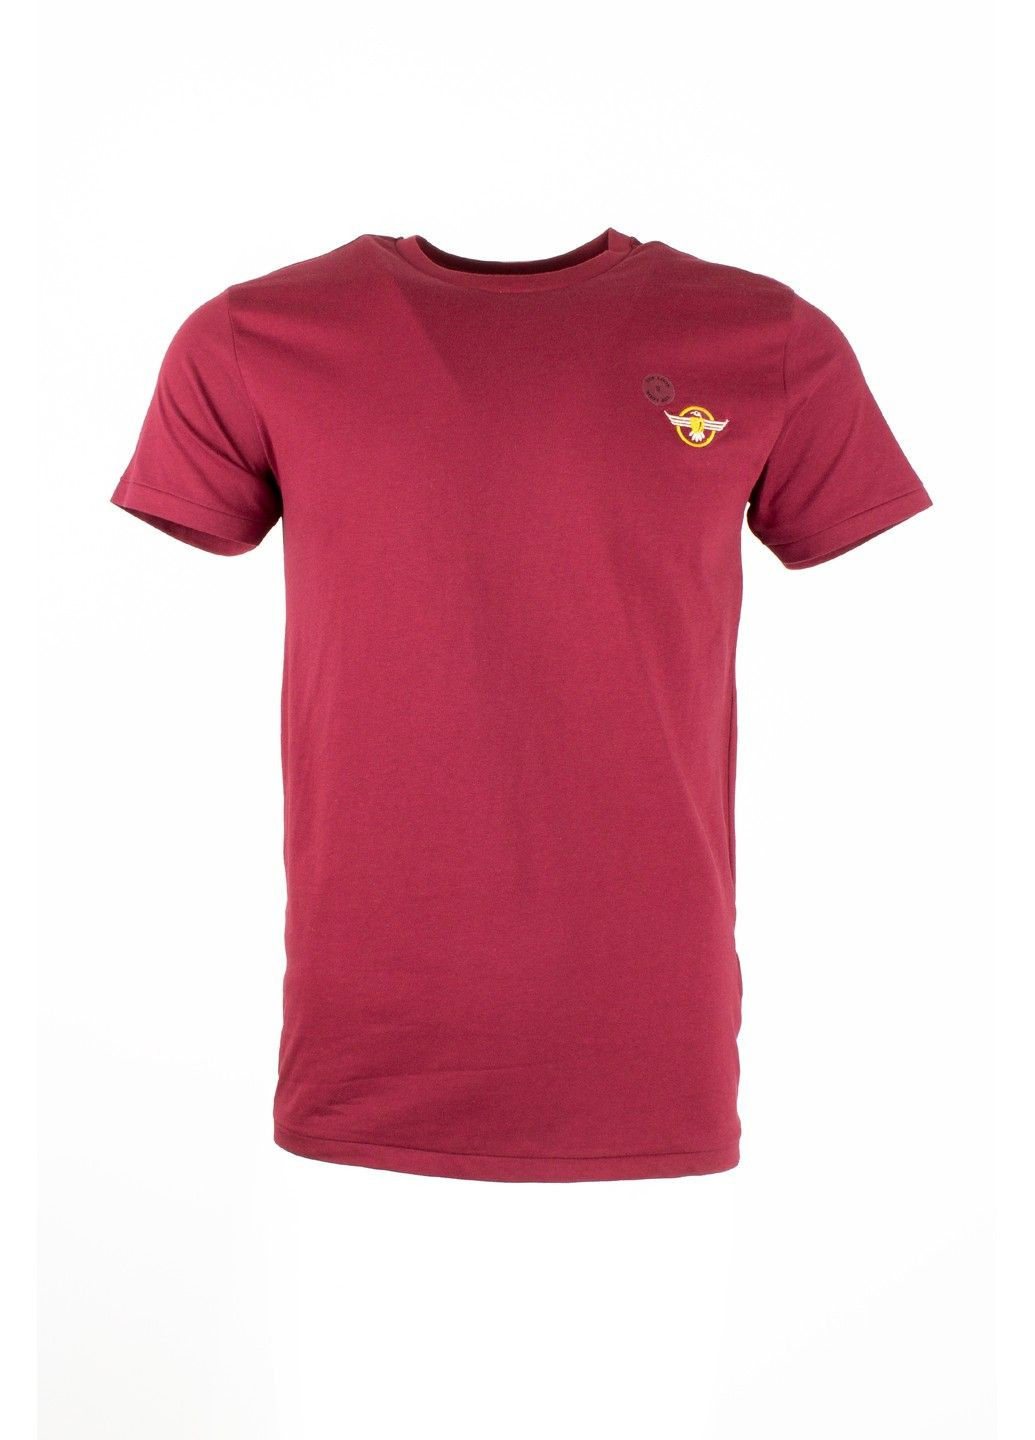 Бордовая футболка мужская top look бордовая 070821-001532 No Brand